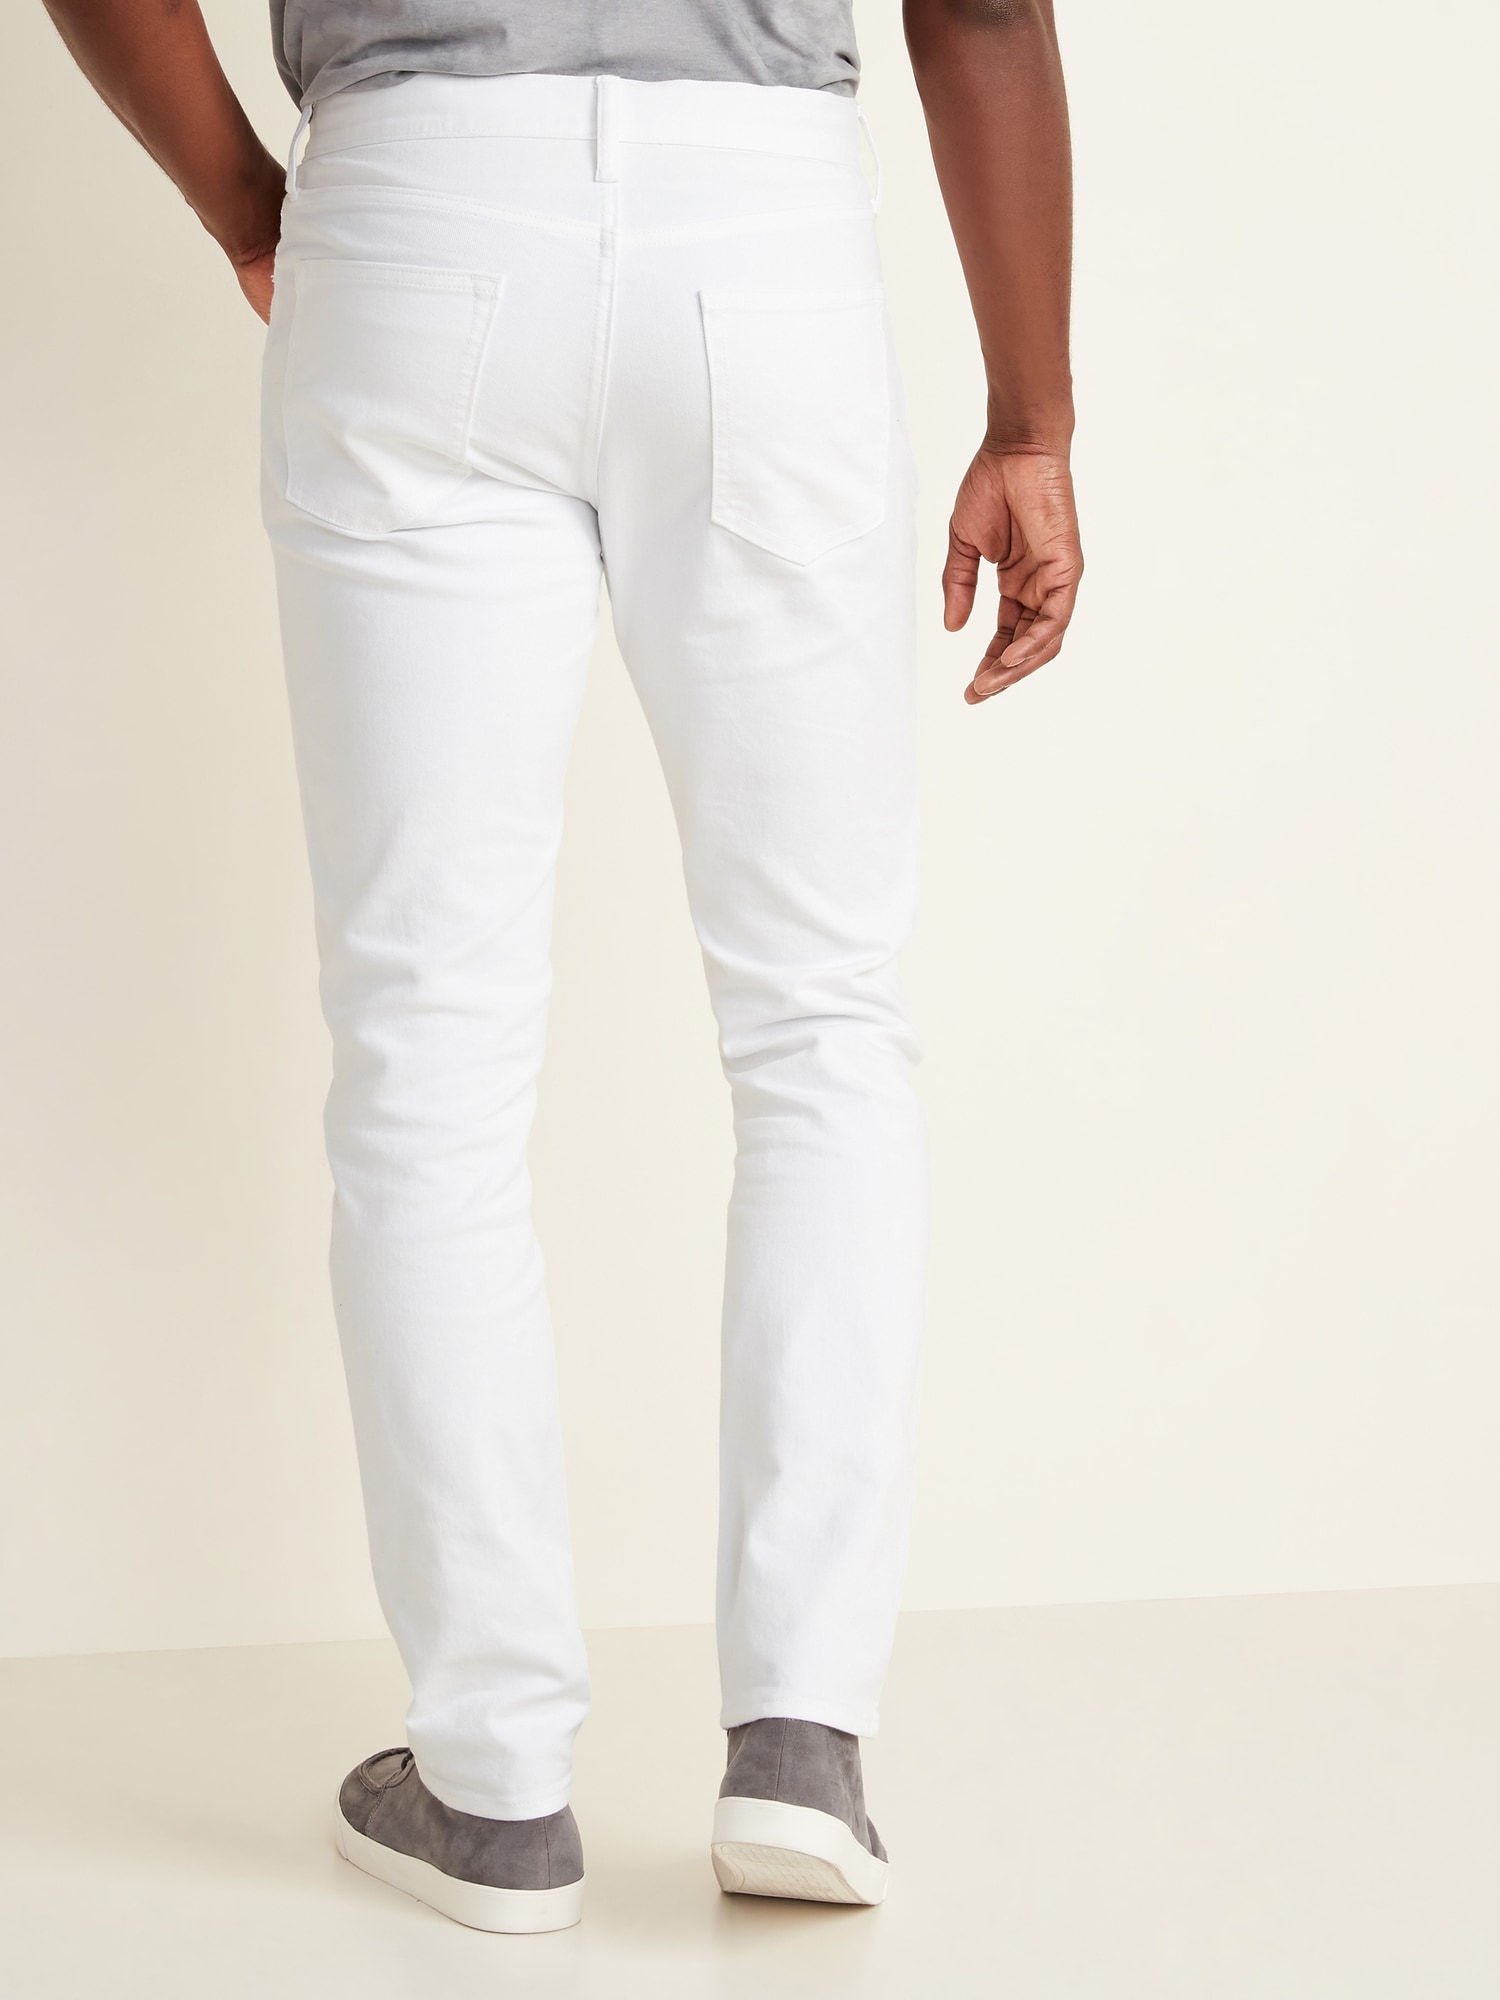 white jeans for mens banana republic